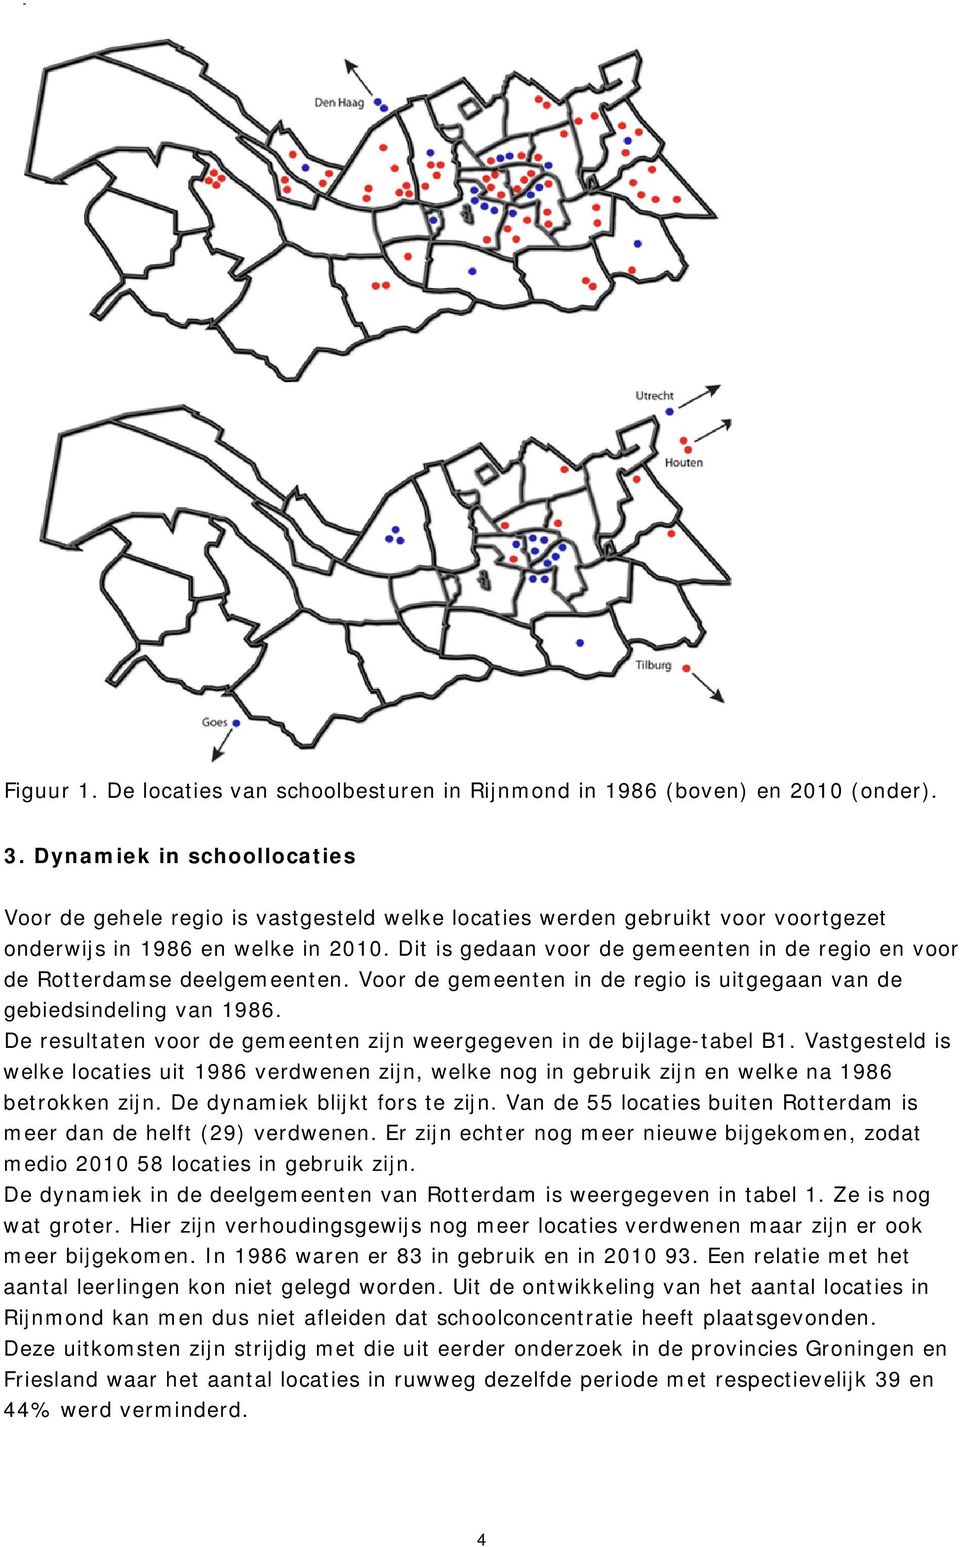 Dit is gedaan voor de gemeenten in de regio en voor de Rotterdamse deelgemeenten. Voor de gemeenten in de regio is uitgegaan van de gebiedsindeling van 1986.